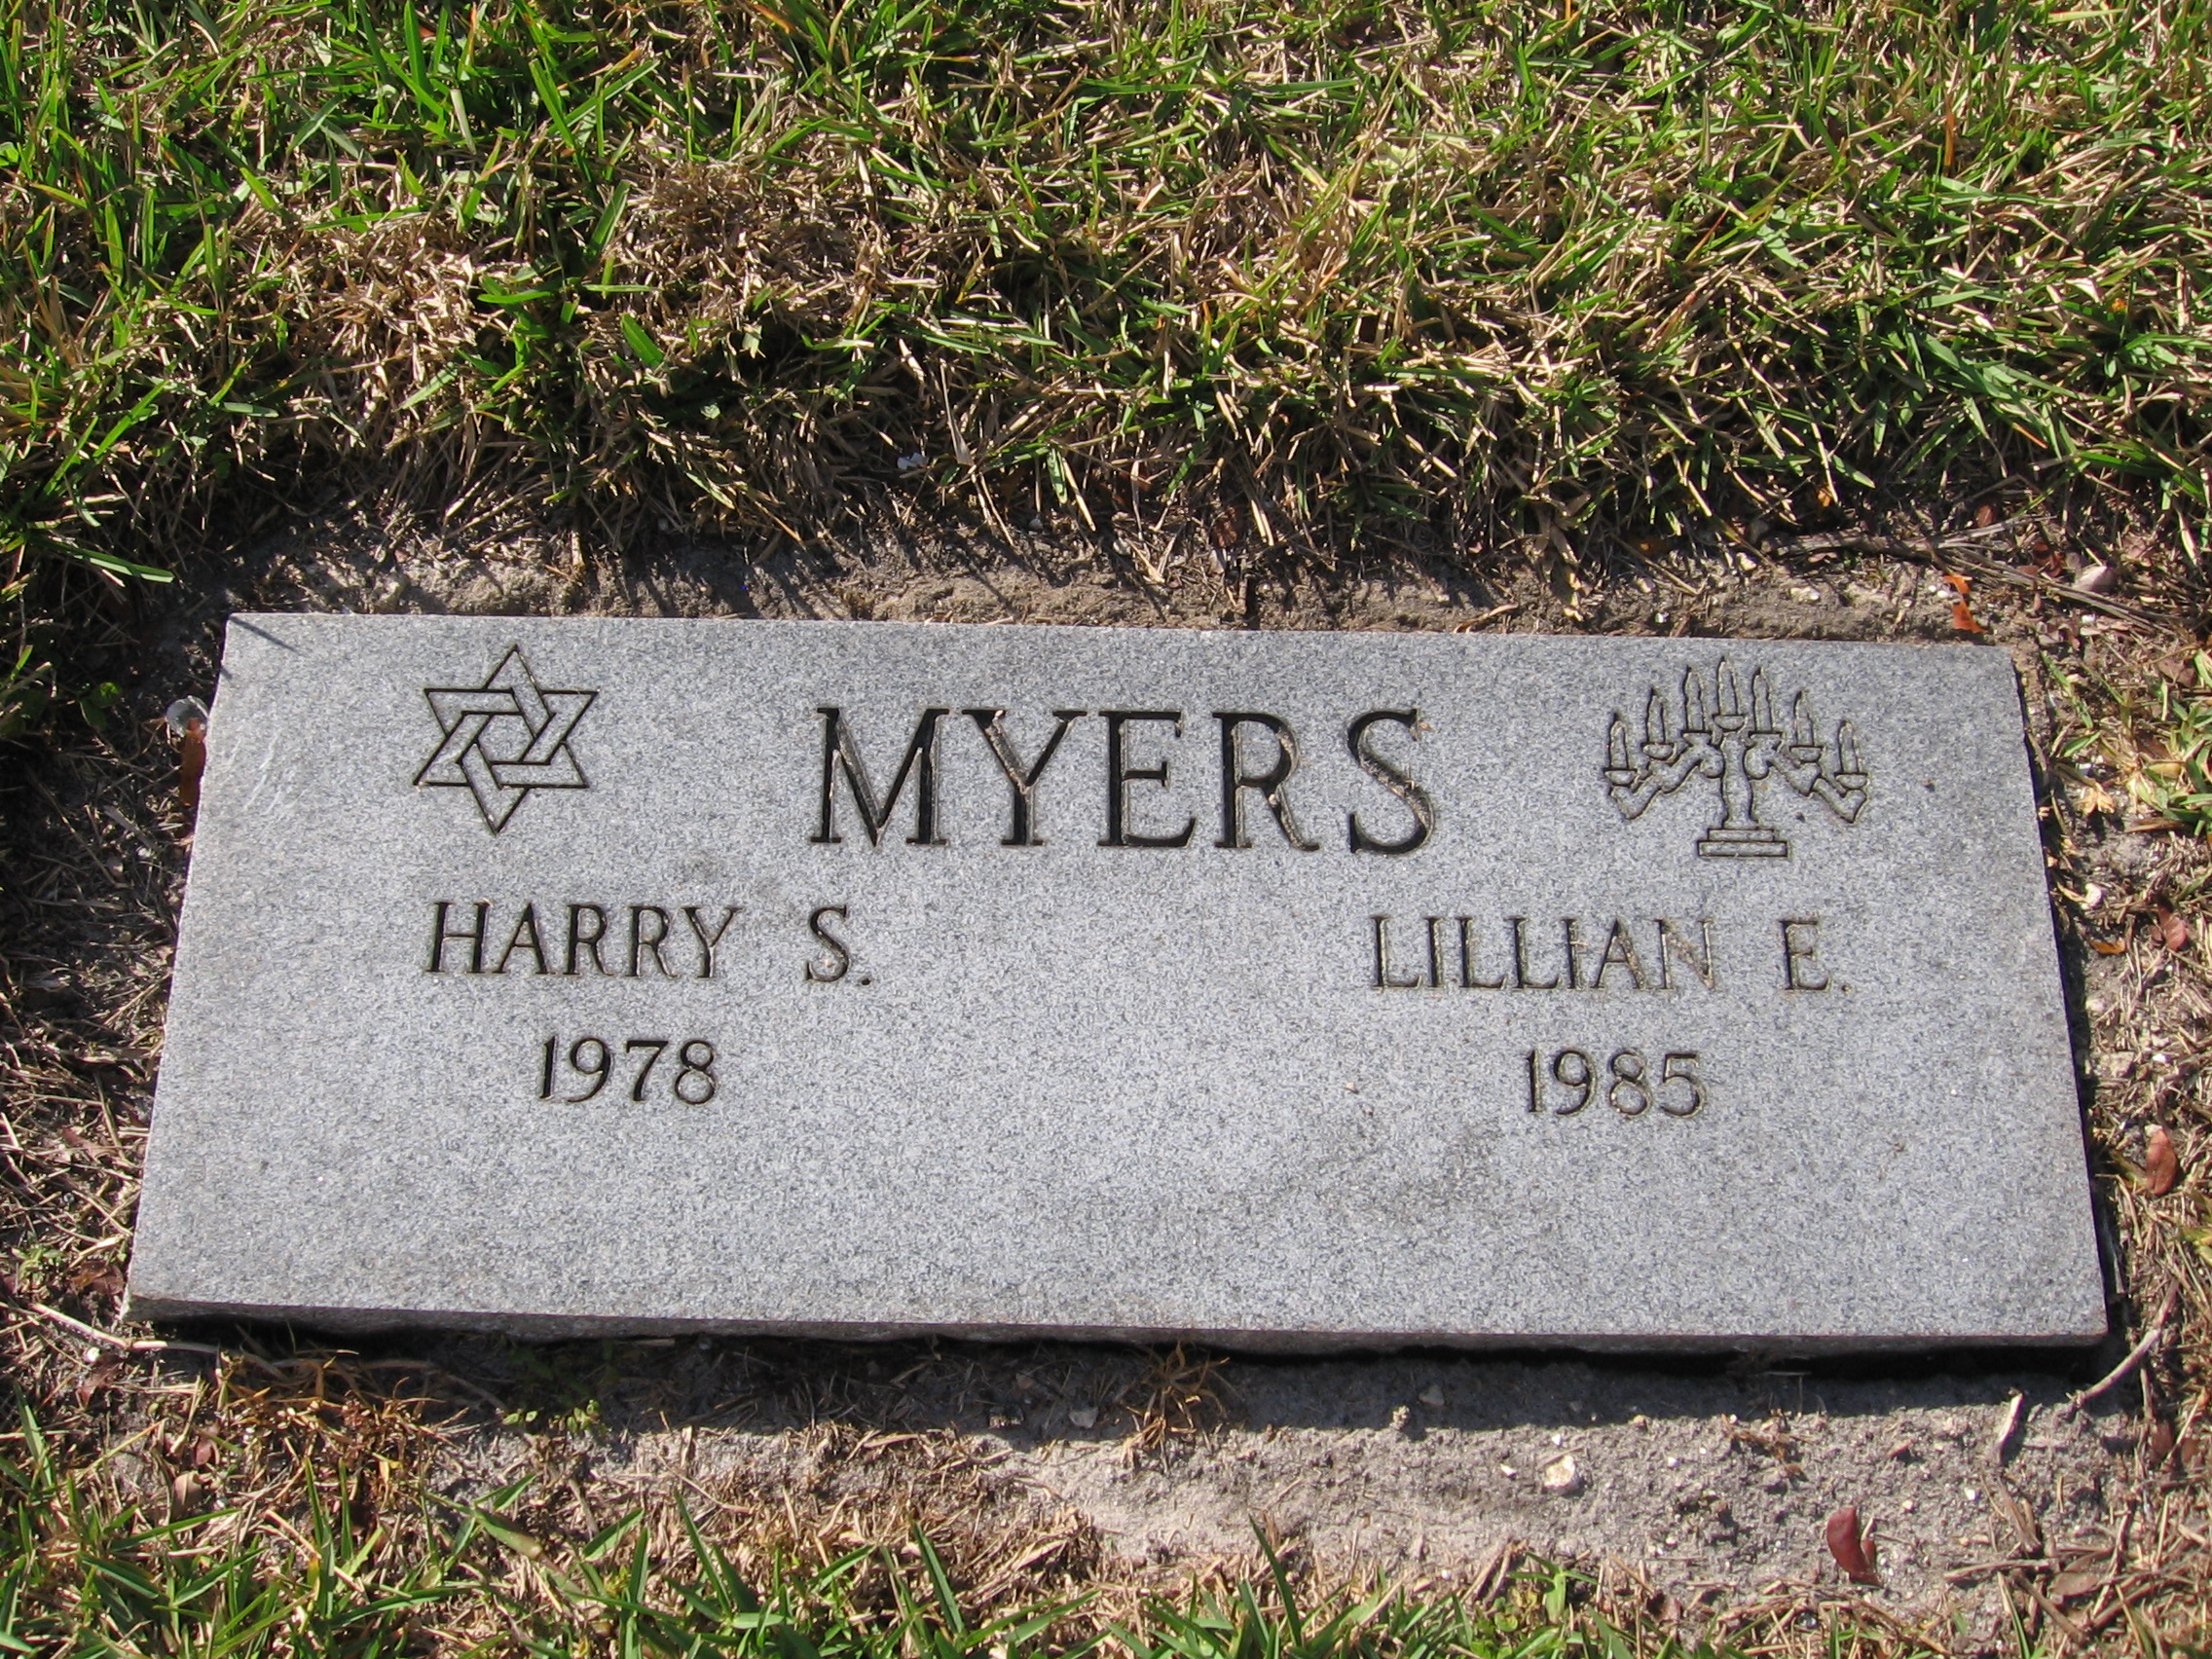 Harry S Myers